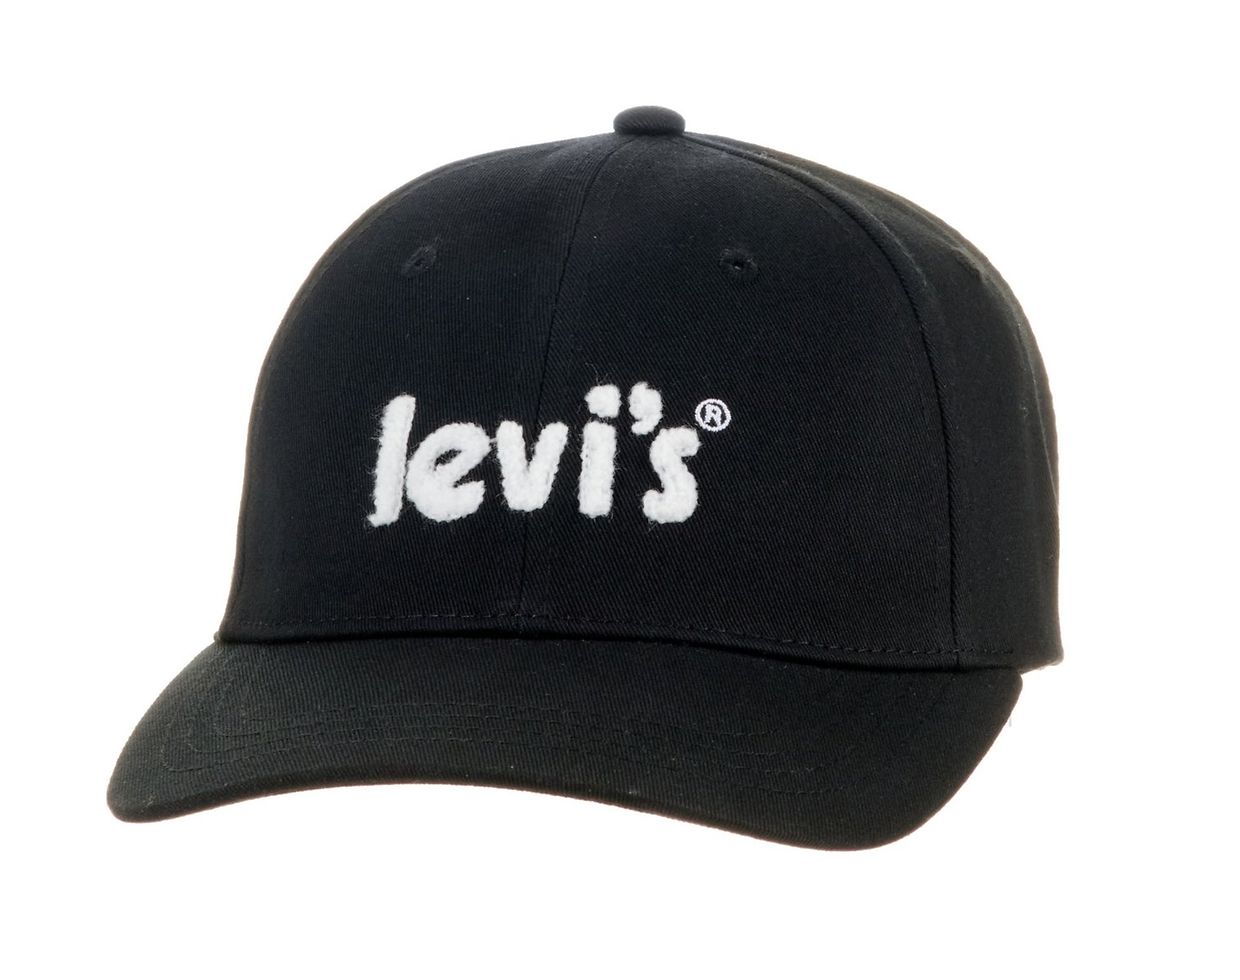 Für Hobbysportler, Privatermittler und Glatzenträger: Baseball-Cap von Levi's, um 25 Euro.